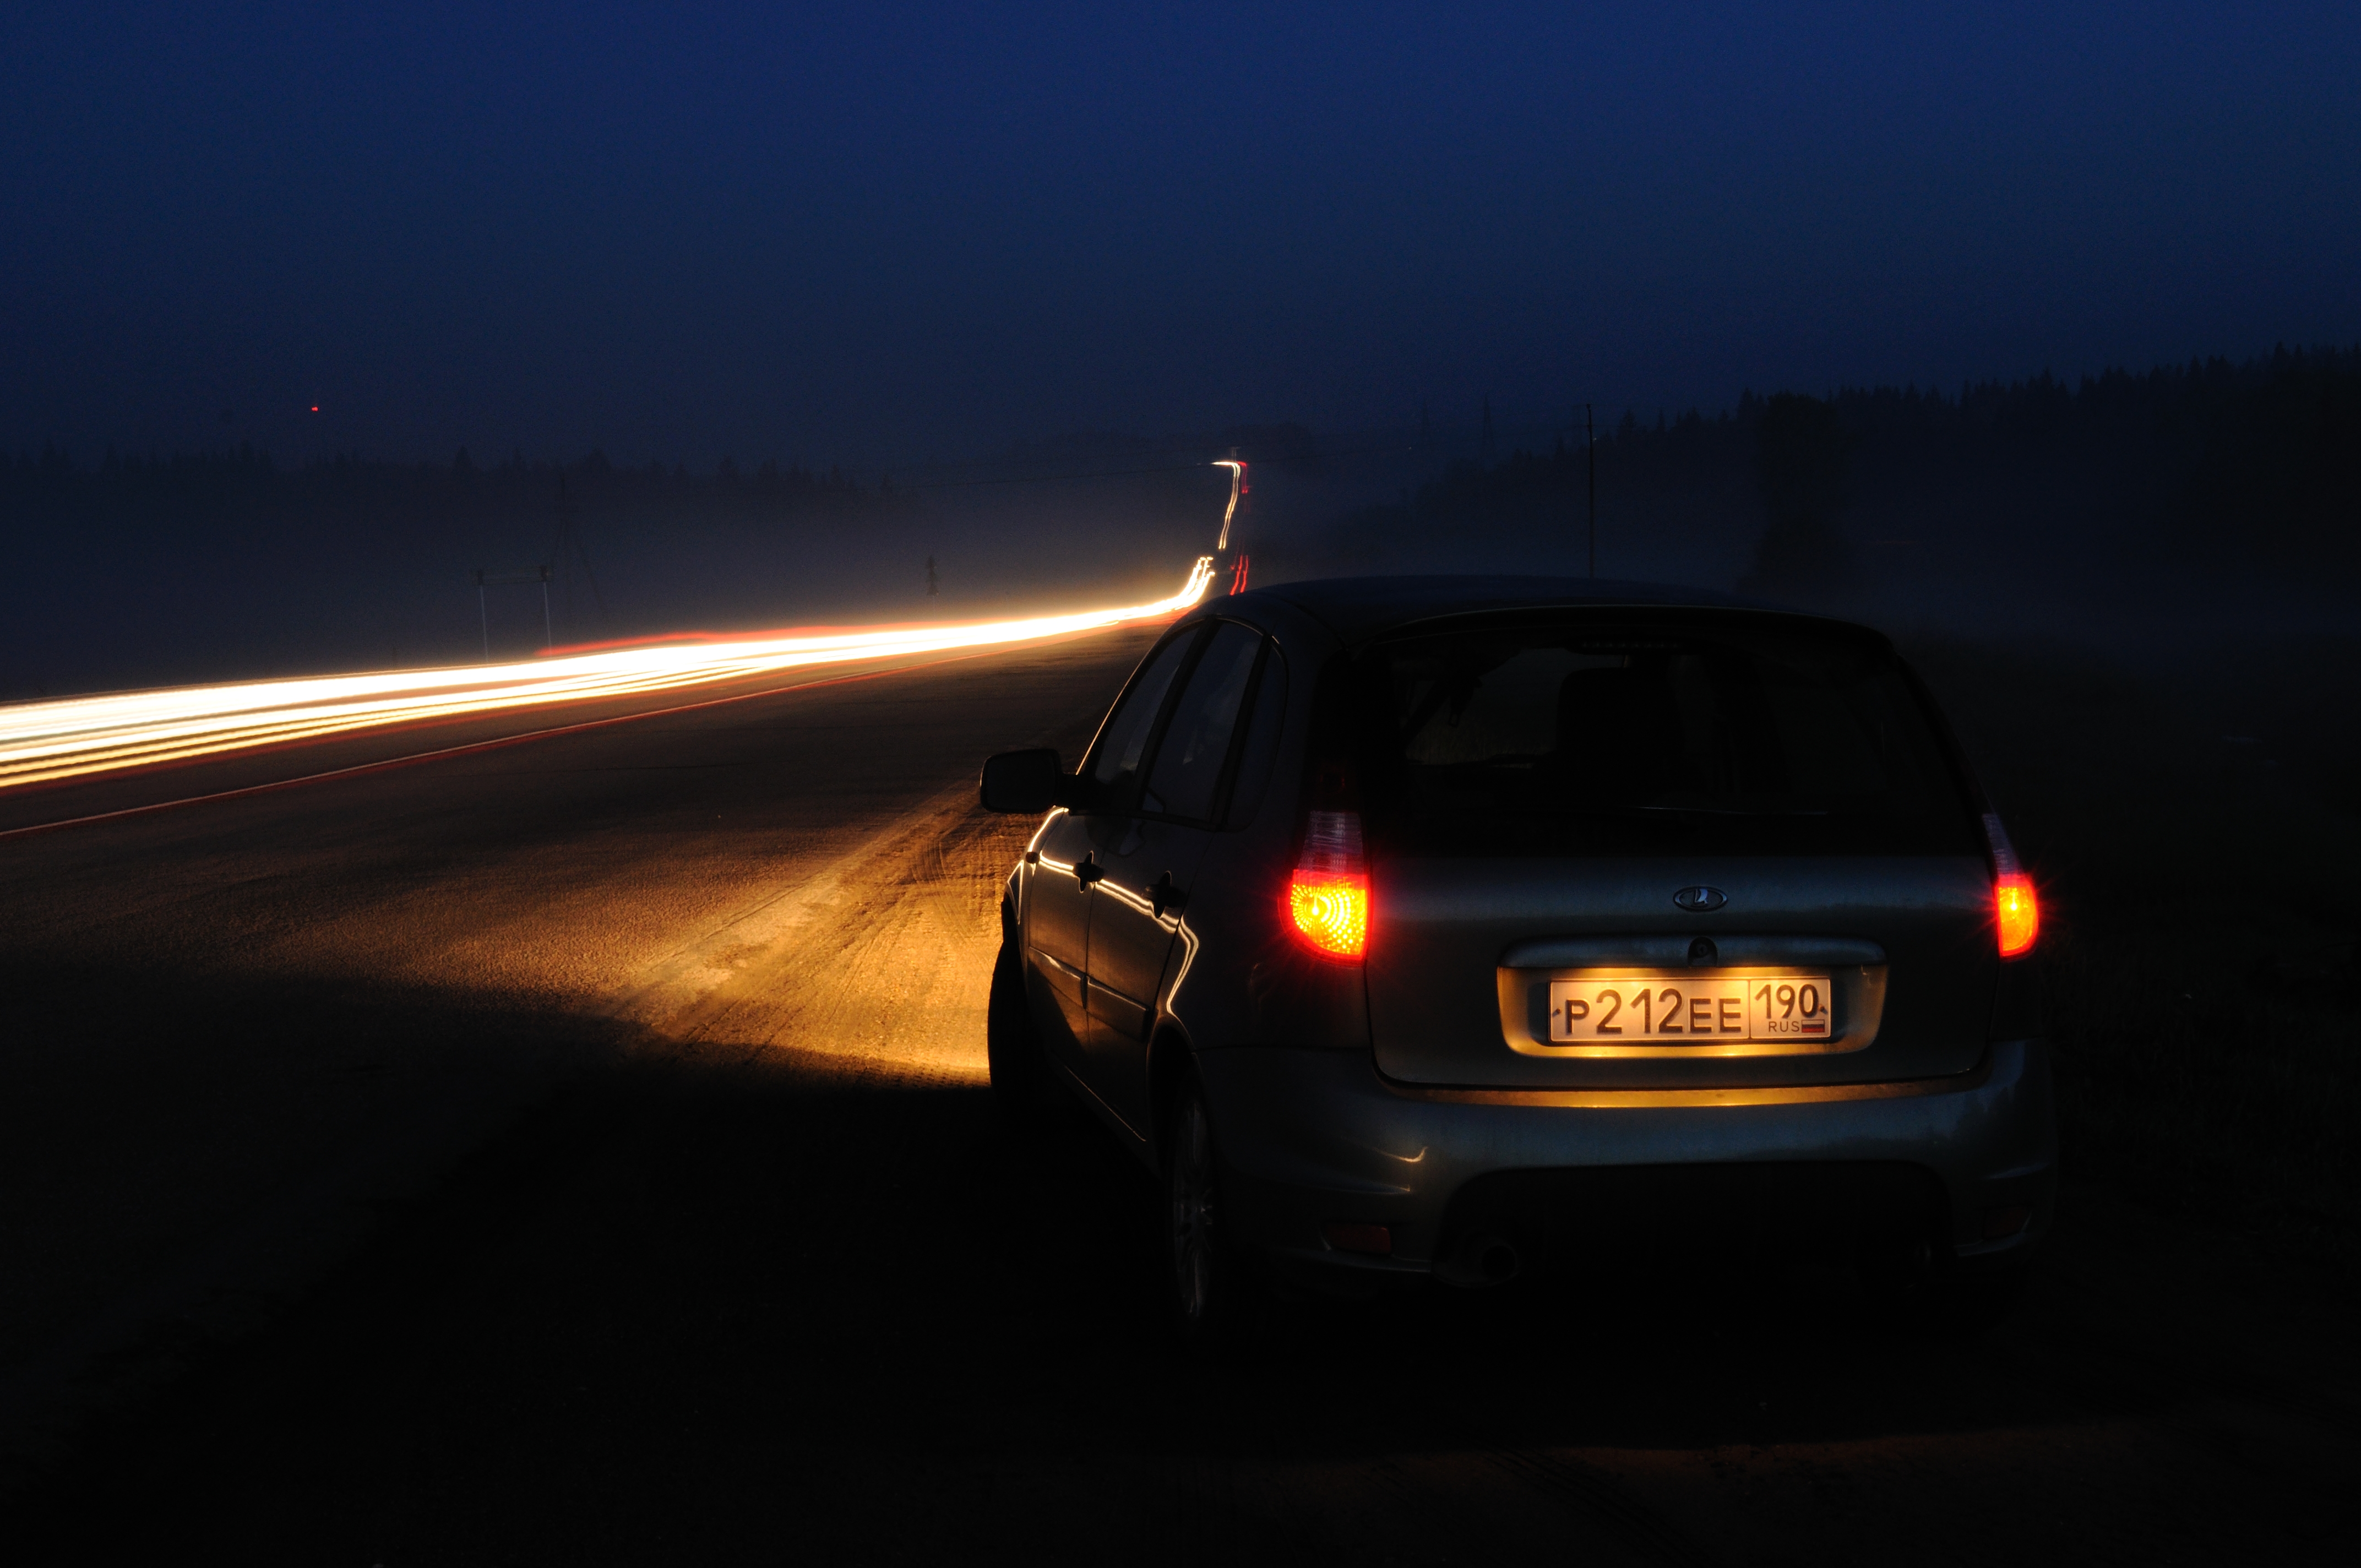 Свет фар фар фар фонарей. Машина ночью на дороге. Машина на трассе ночью. Ночь трасса машина. Фары автомобиля ночью.